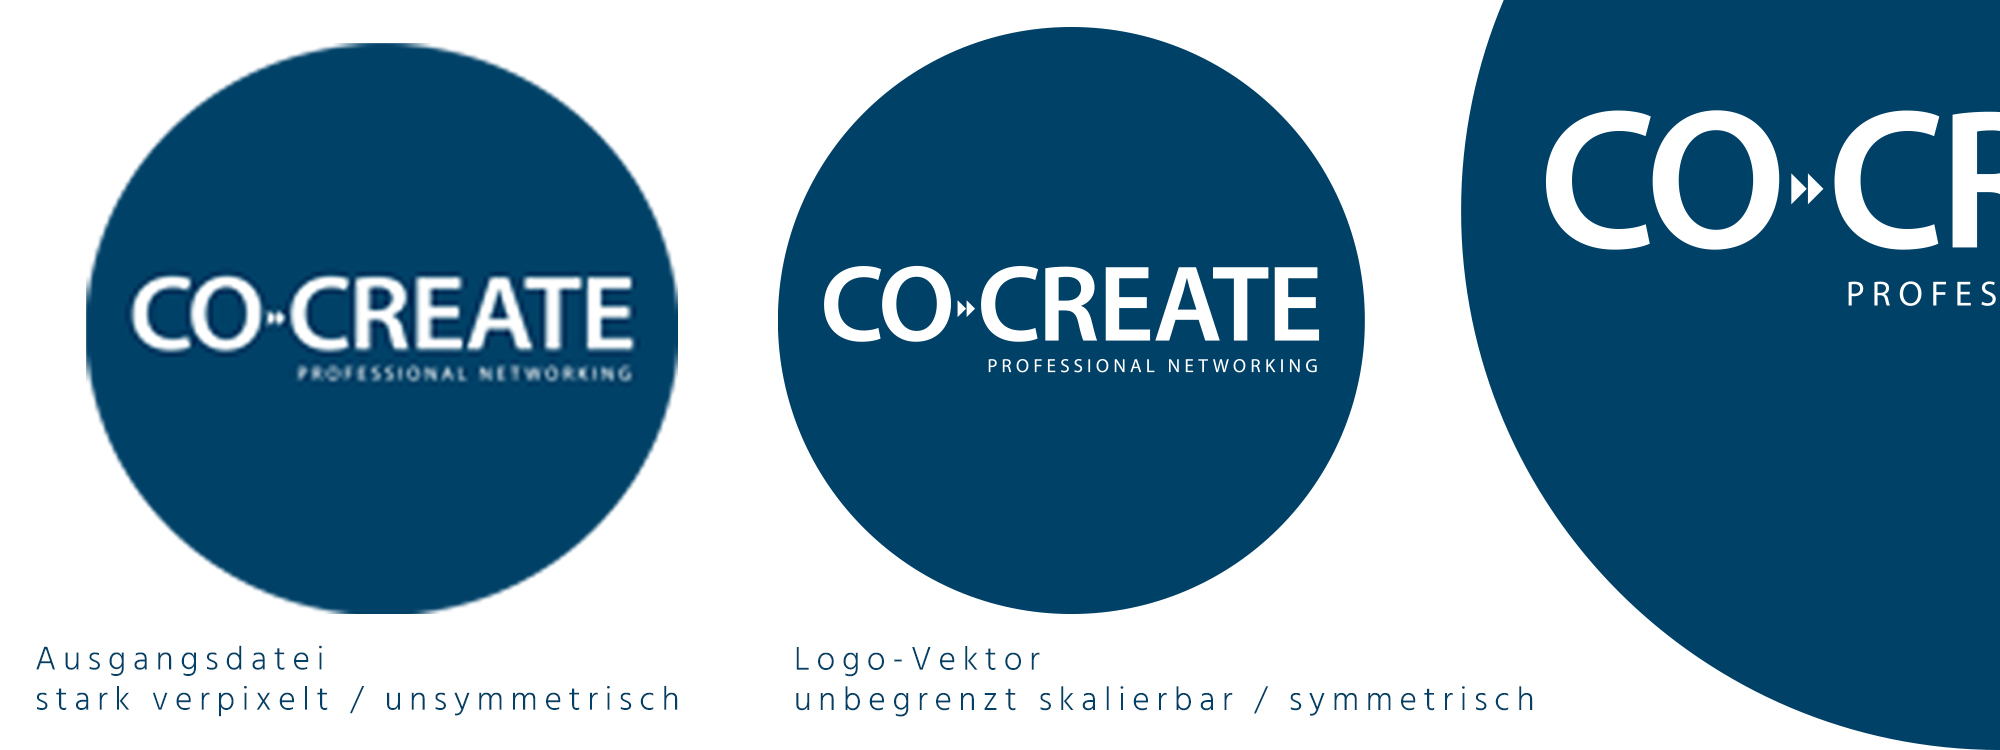 Logo Vektorisierung: So wird aus einem verpixelten Bild ein hochwertiges Logo